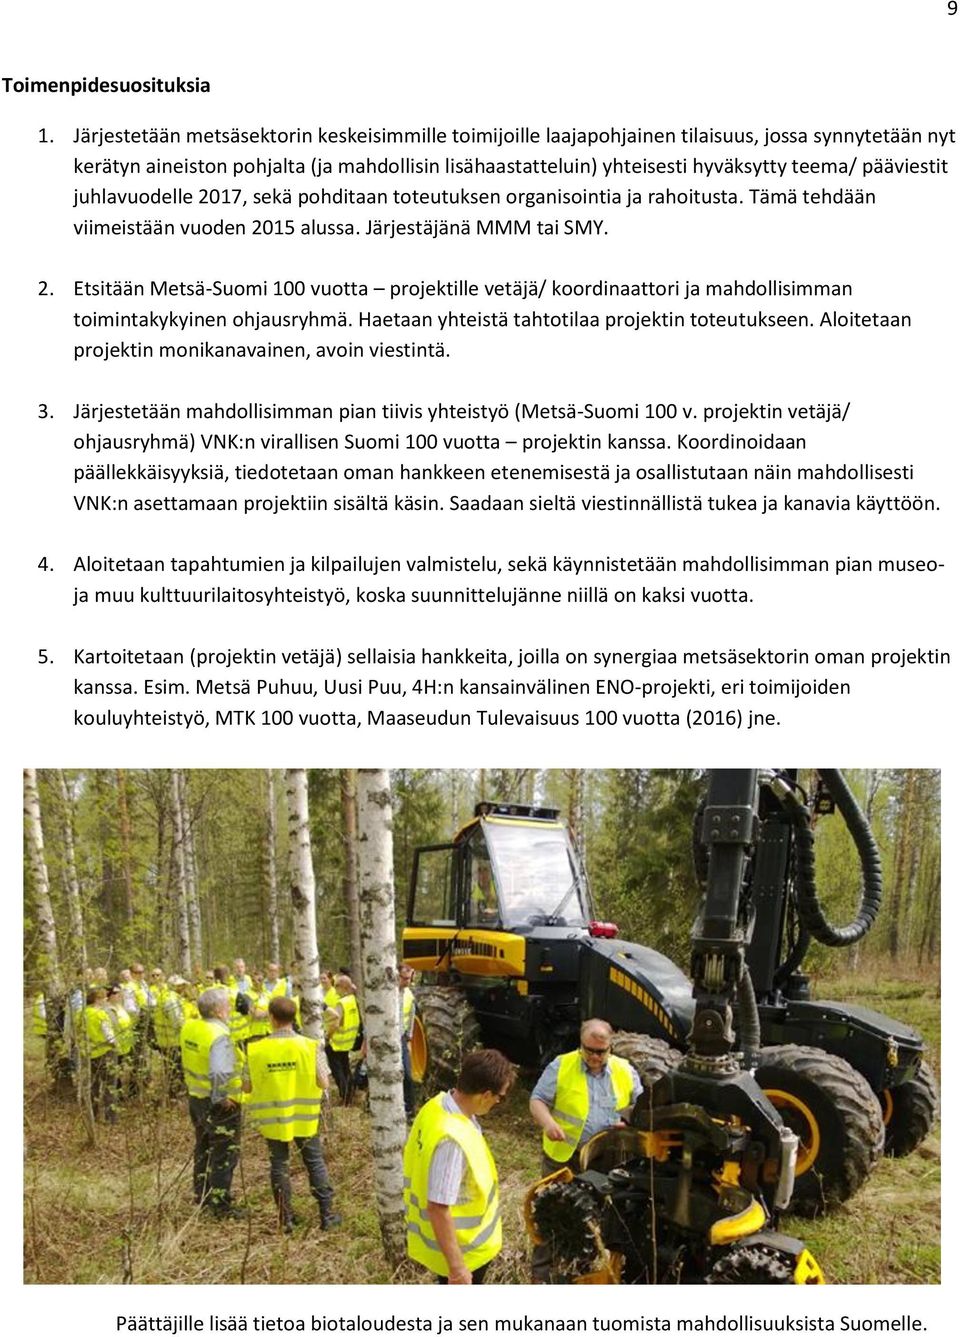 pääviestit juhlavuodelle 2017, sekä pohditaan toteutuksen organisointia ja rahoitusta. Tämä tehdään viimeistään vuoden 2015 alussa. Järjestäjänä MMM tai SMY. 2. Etsitään Metsä-Suomi 100 vuotta projektille vetäjä/ koordinaattori ja mahdollisimman toimintakykyinen ohjausryhmä.